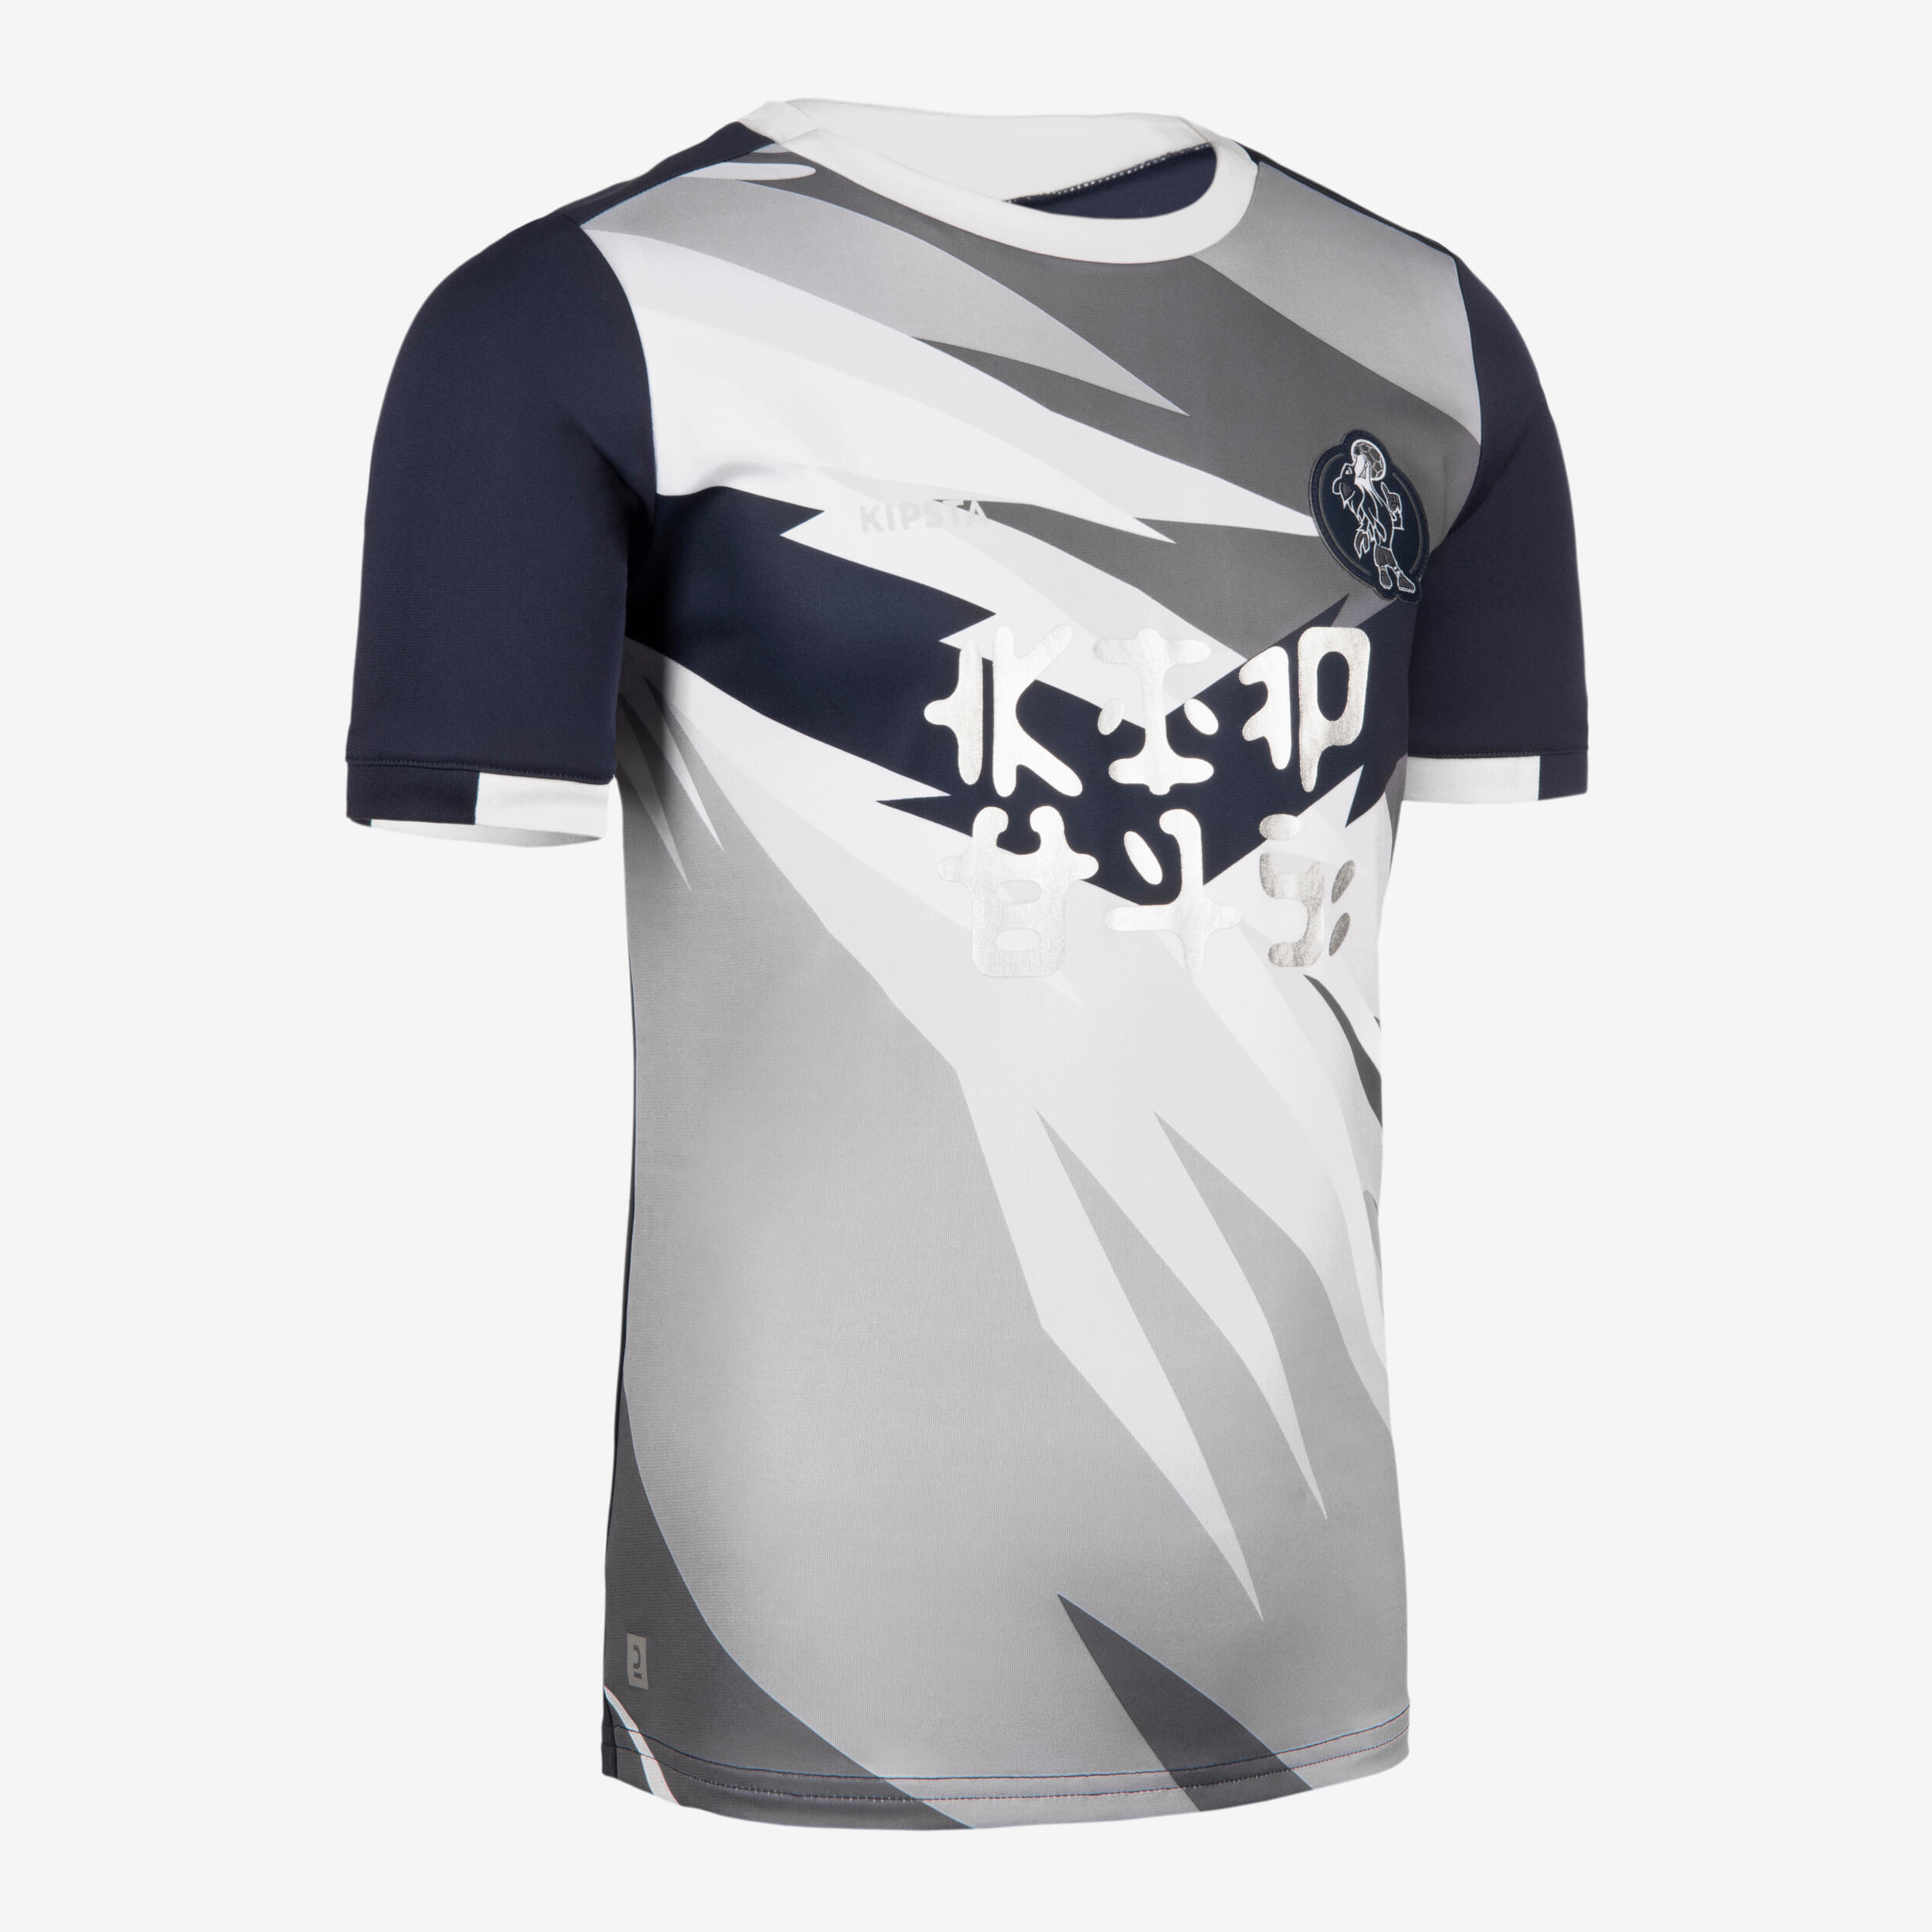 KIPSTA Kids' Short-Sleeved Football Shirt - Grey/Navy